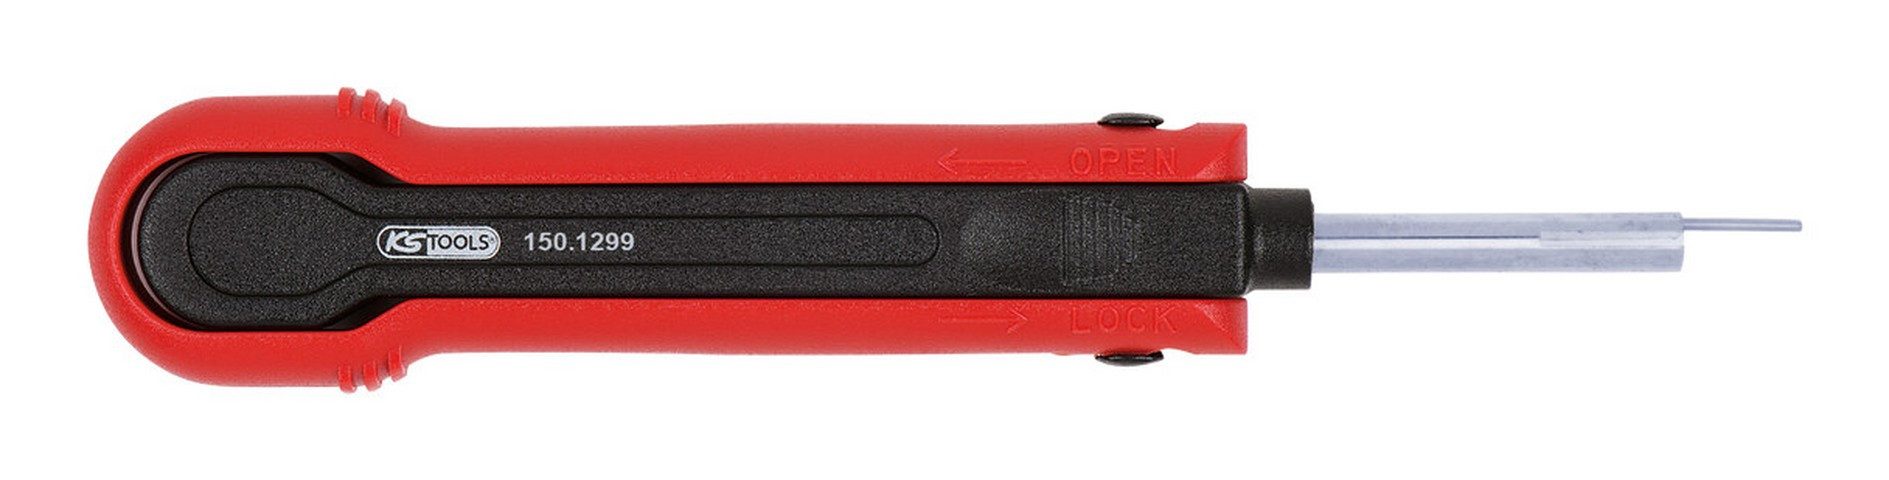 KS Tools Montagewerkzeug, L: 13.9 cm, Für Flachstecker/Flachsteckhülsen 0,8 mm, 1,5 mm (Delphi Ducon)